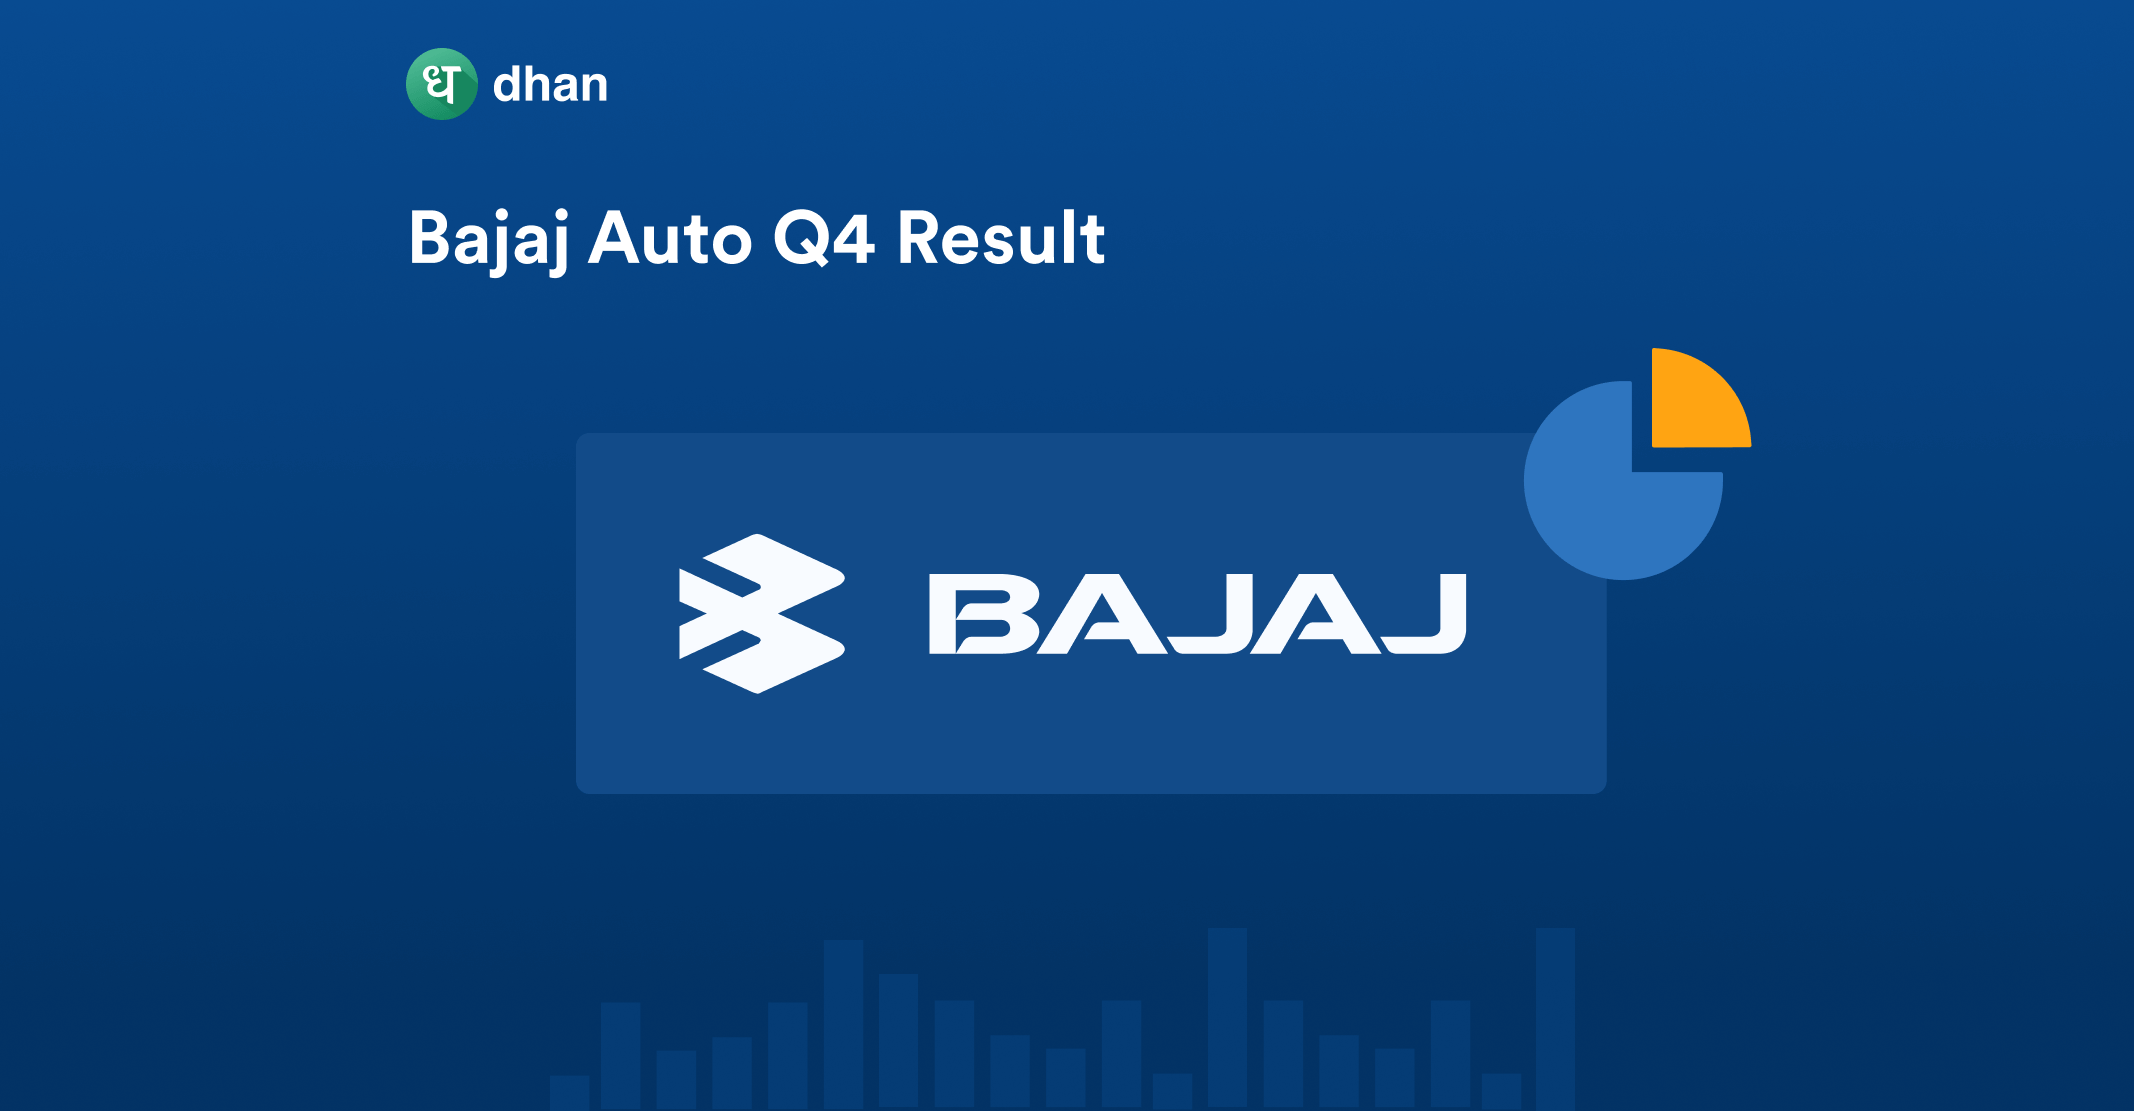 Bajaj Auto Q4 Profit Rises 10%